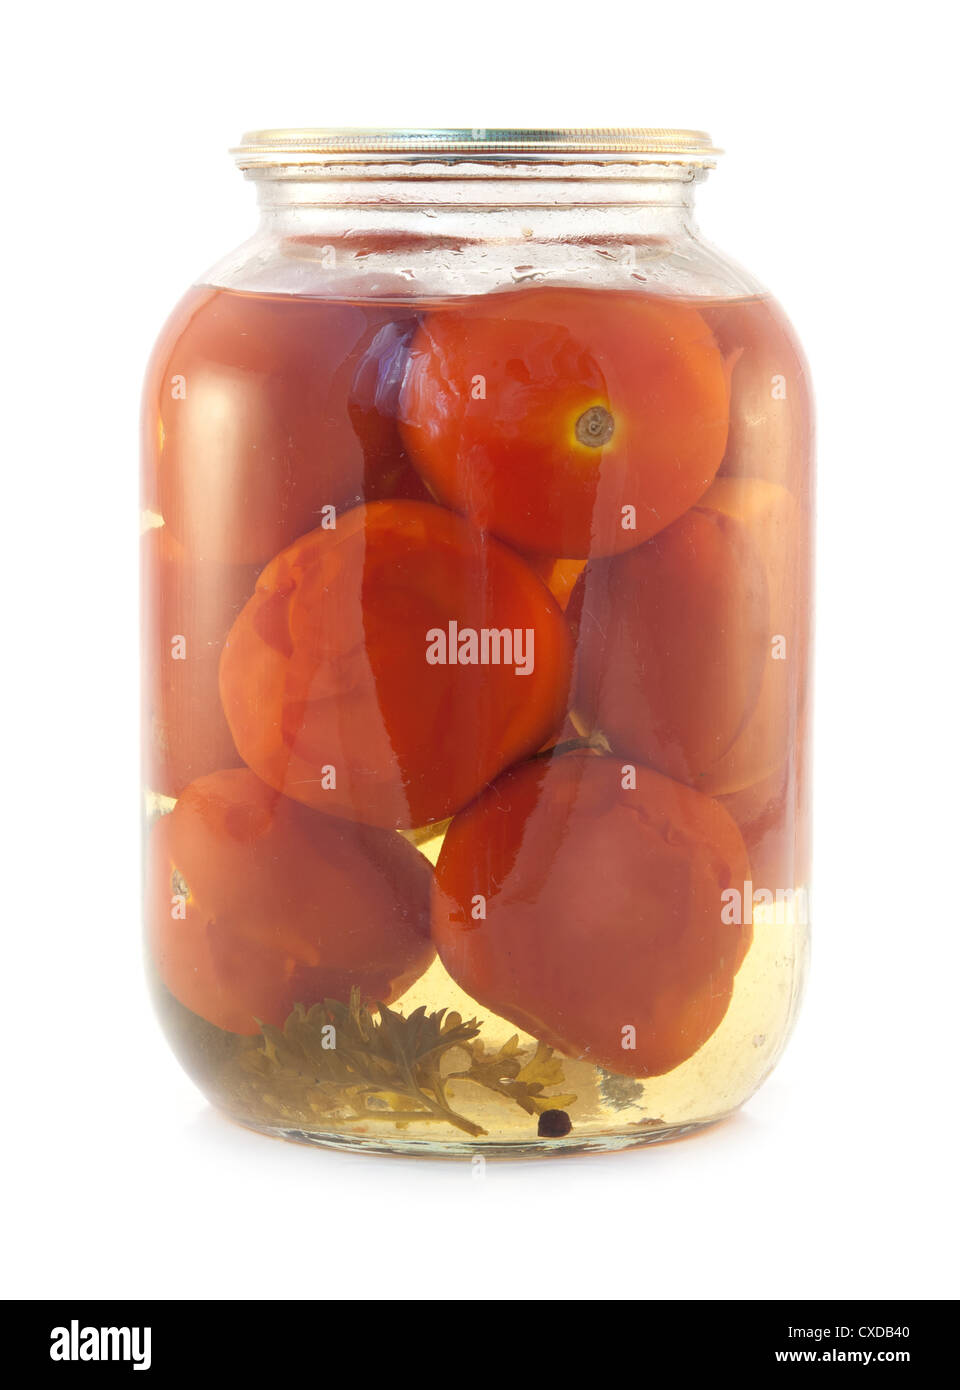 Tomates en conserve dans des bocaux en verre isolated on white Banque D'Images